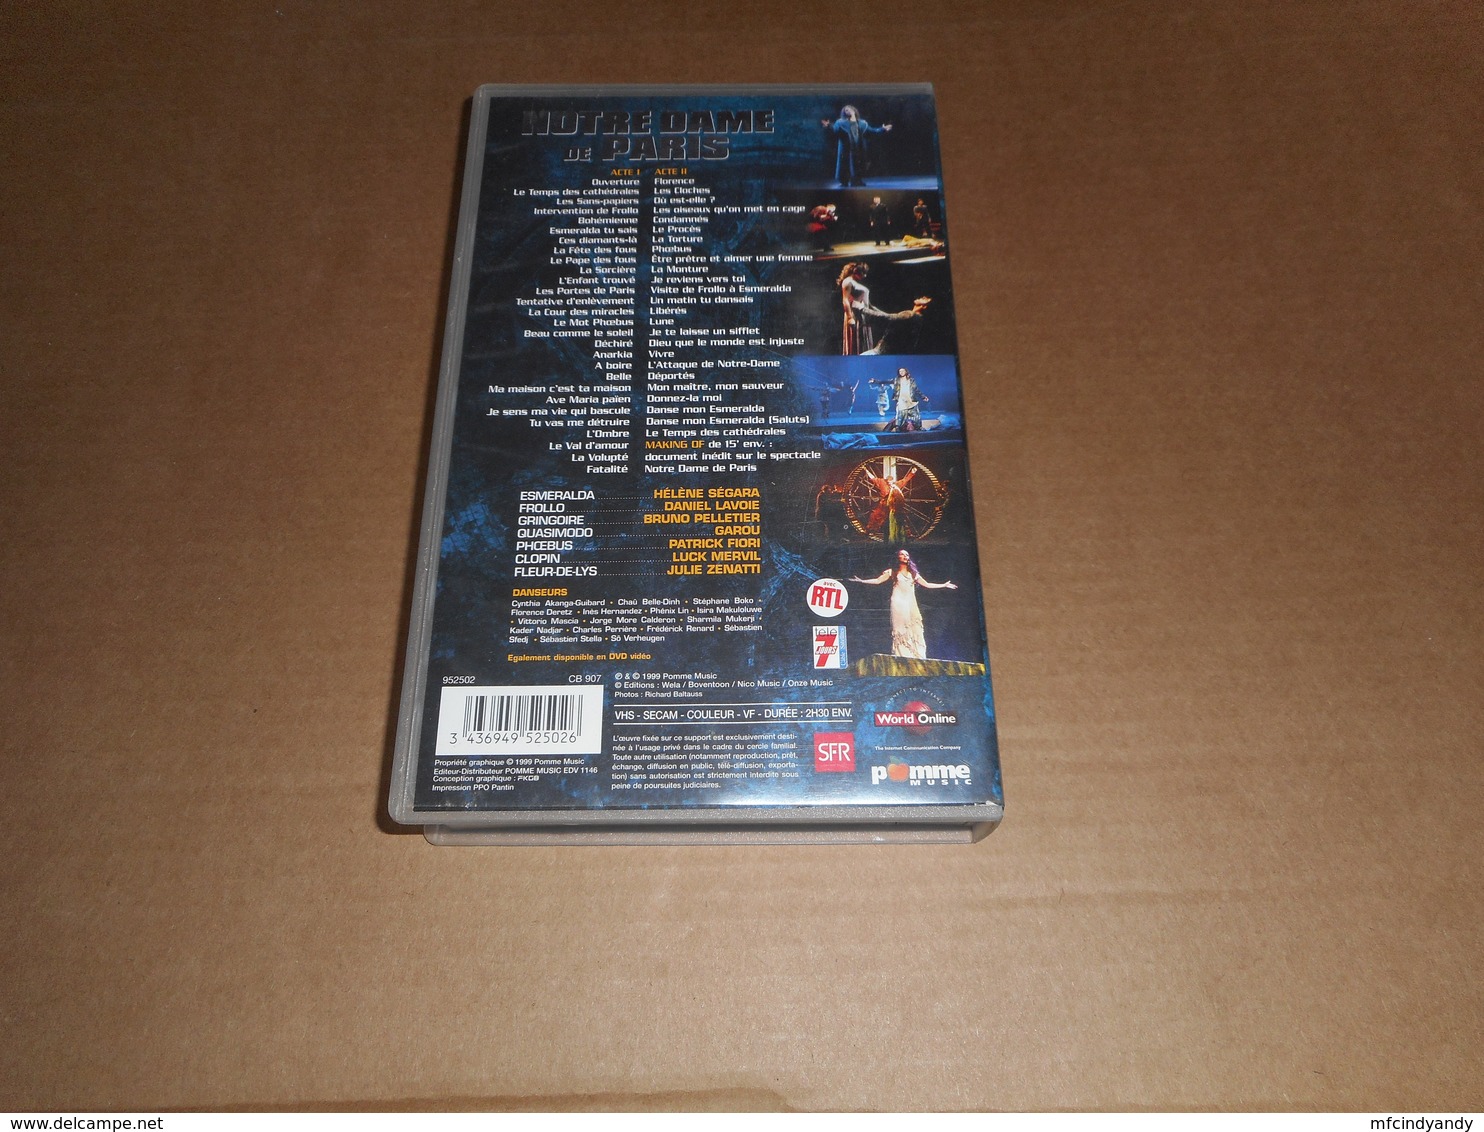 Cassette VHS - Notre Dame De Paris  (Version Intégrale) - Musicalkomedie